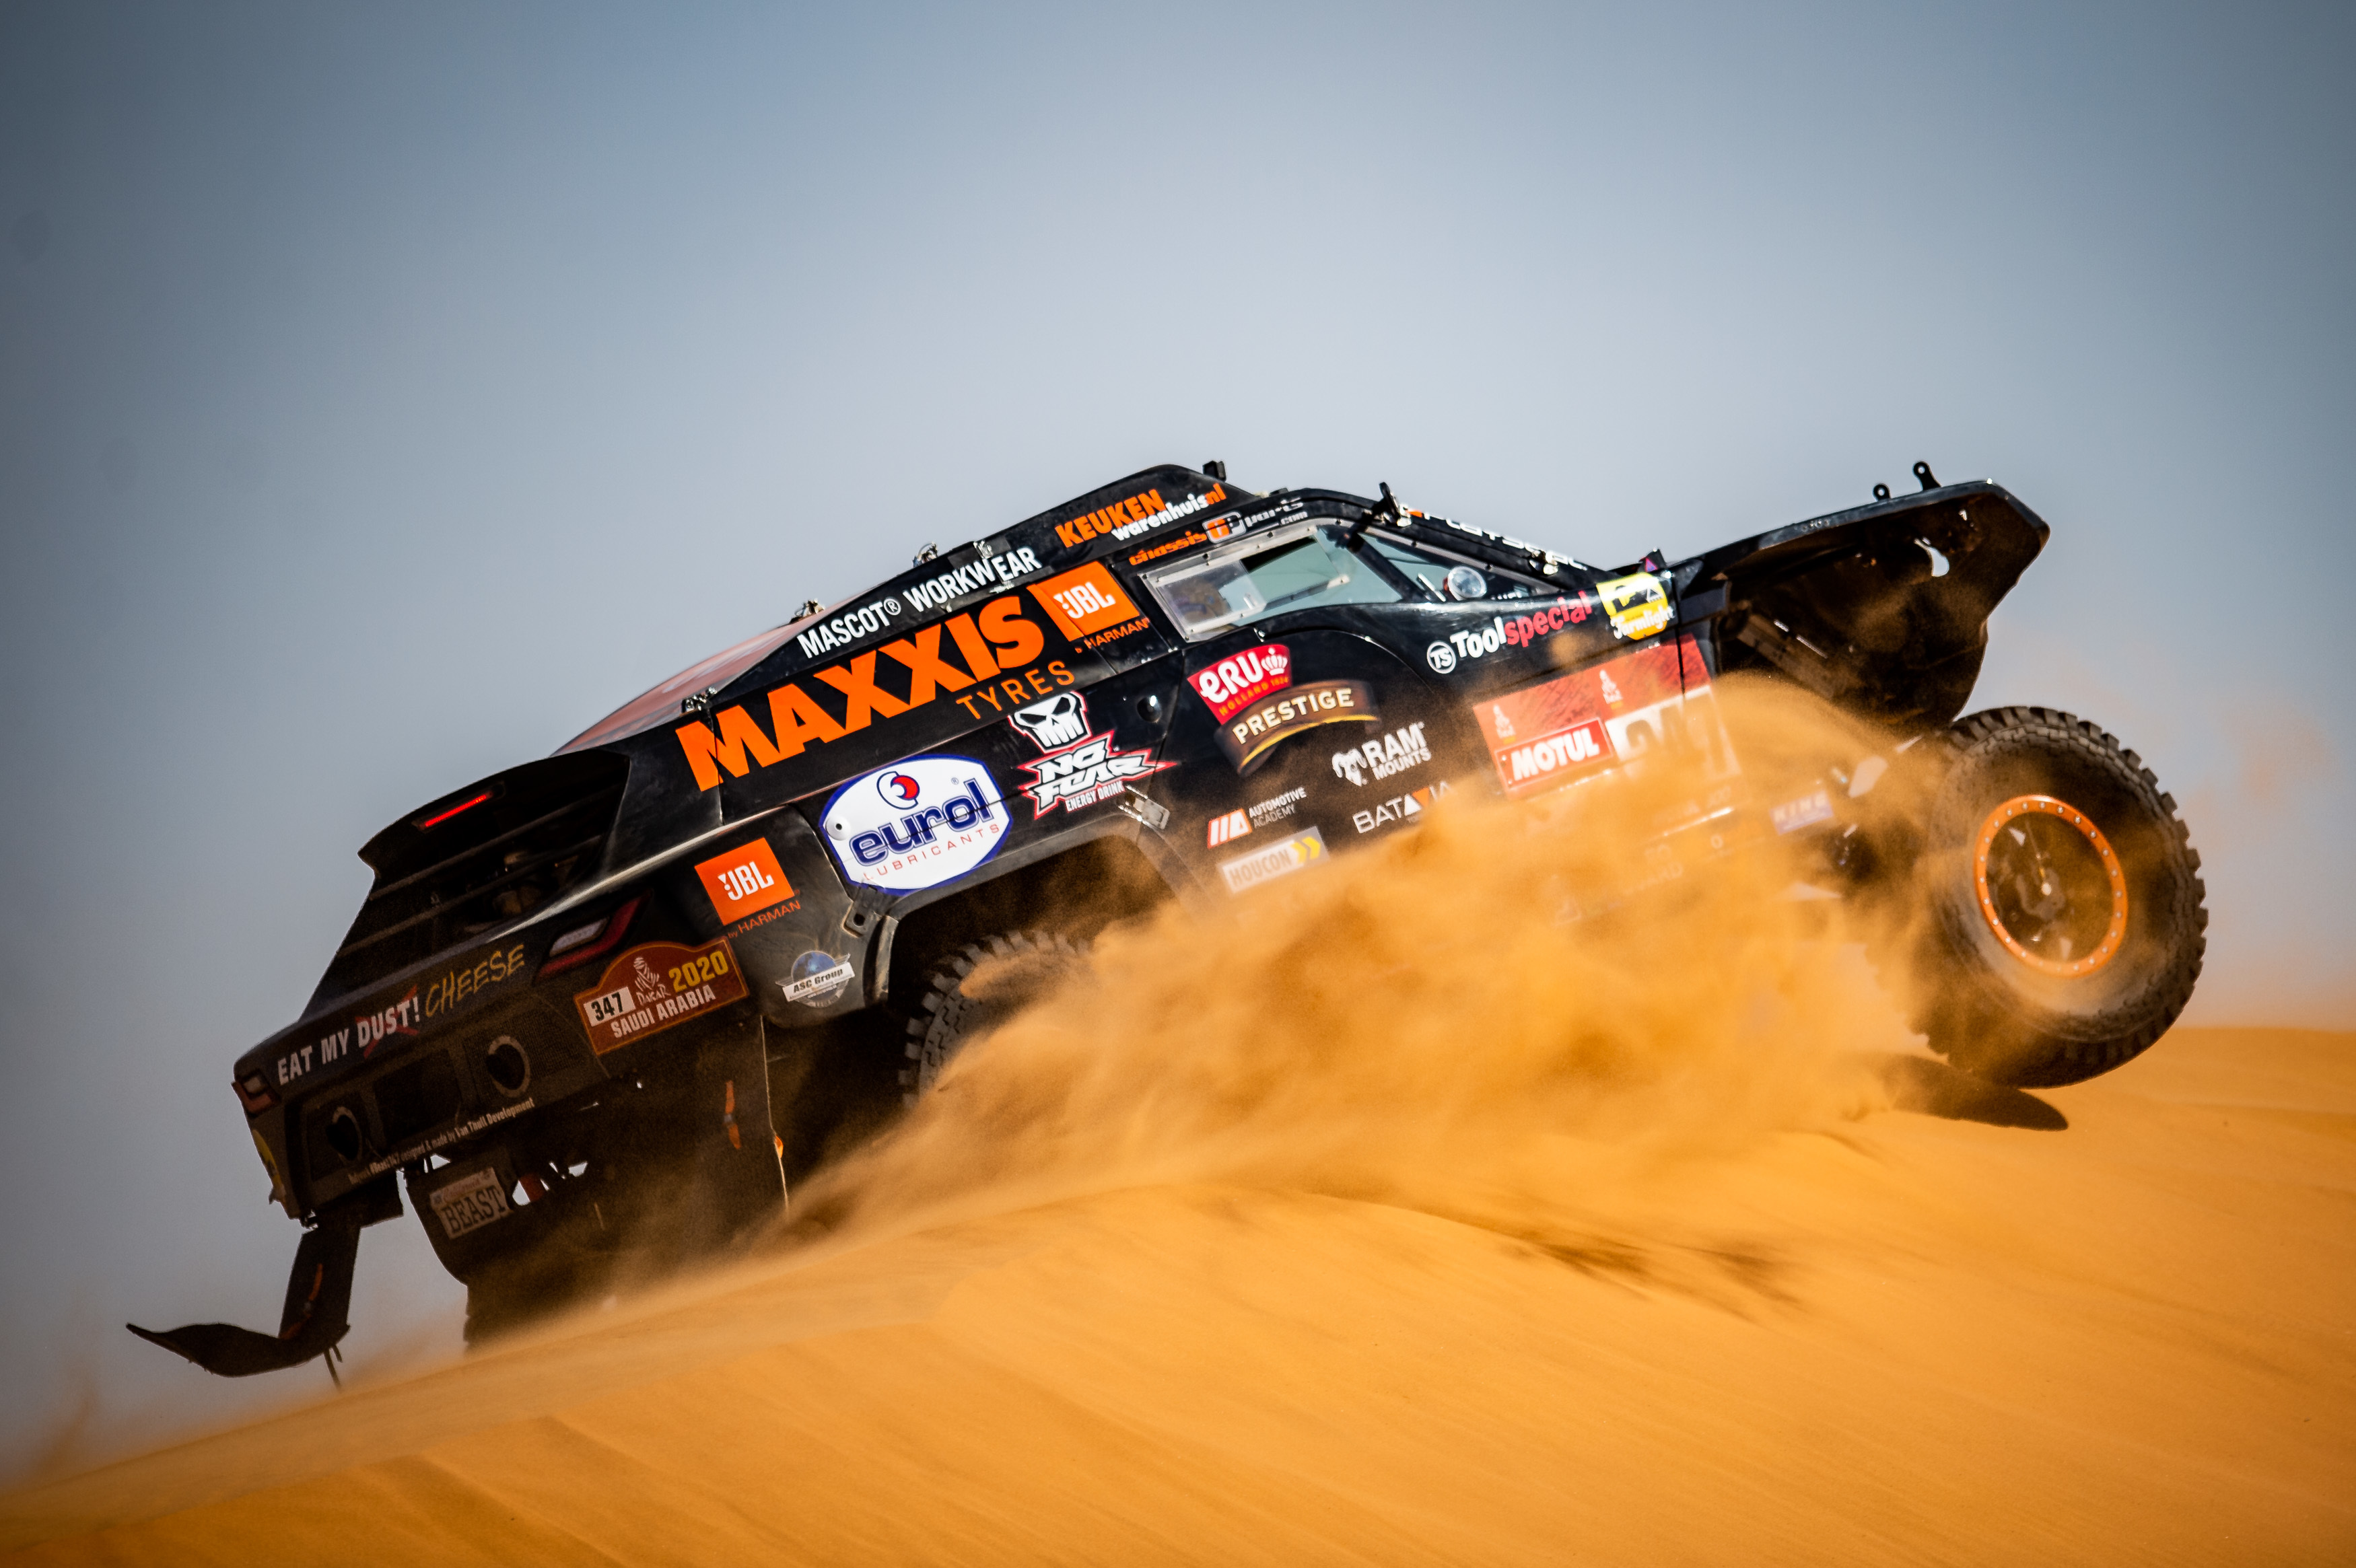 De Coronel’s staan weer op Maxxis komende Dakar rally!